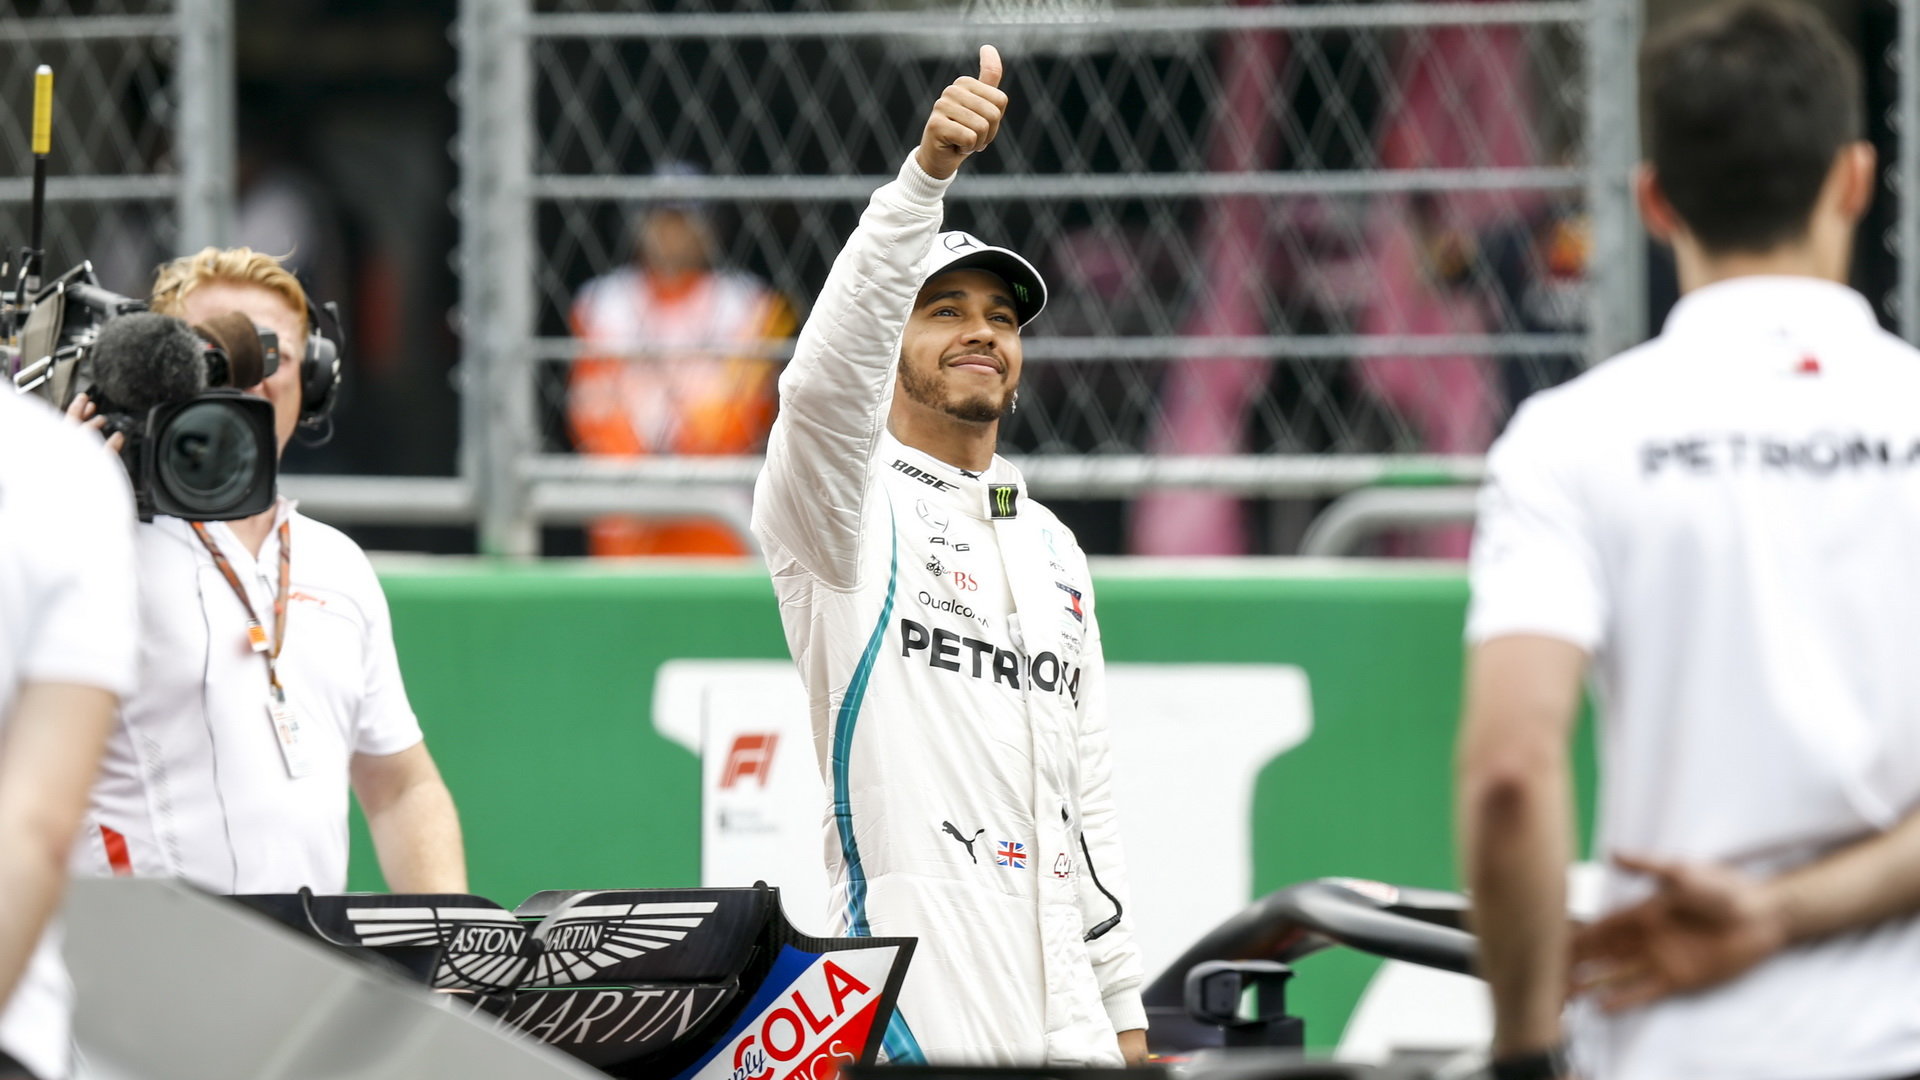 Lewis Hamilton po kvalifikaci v Mexiku